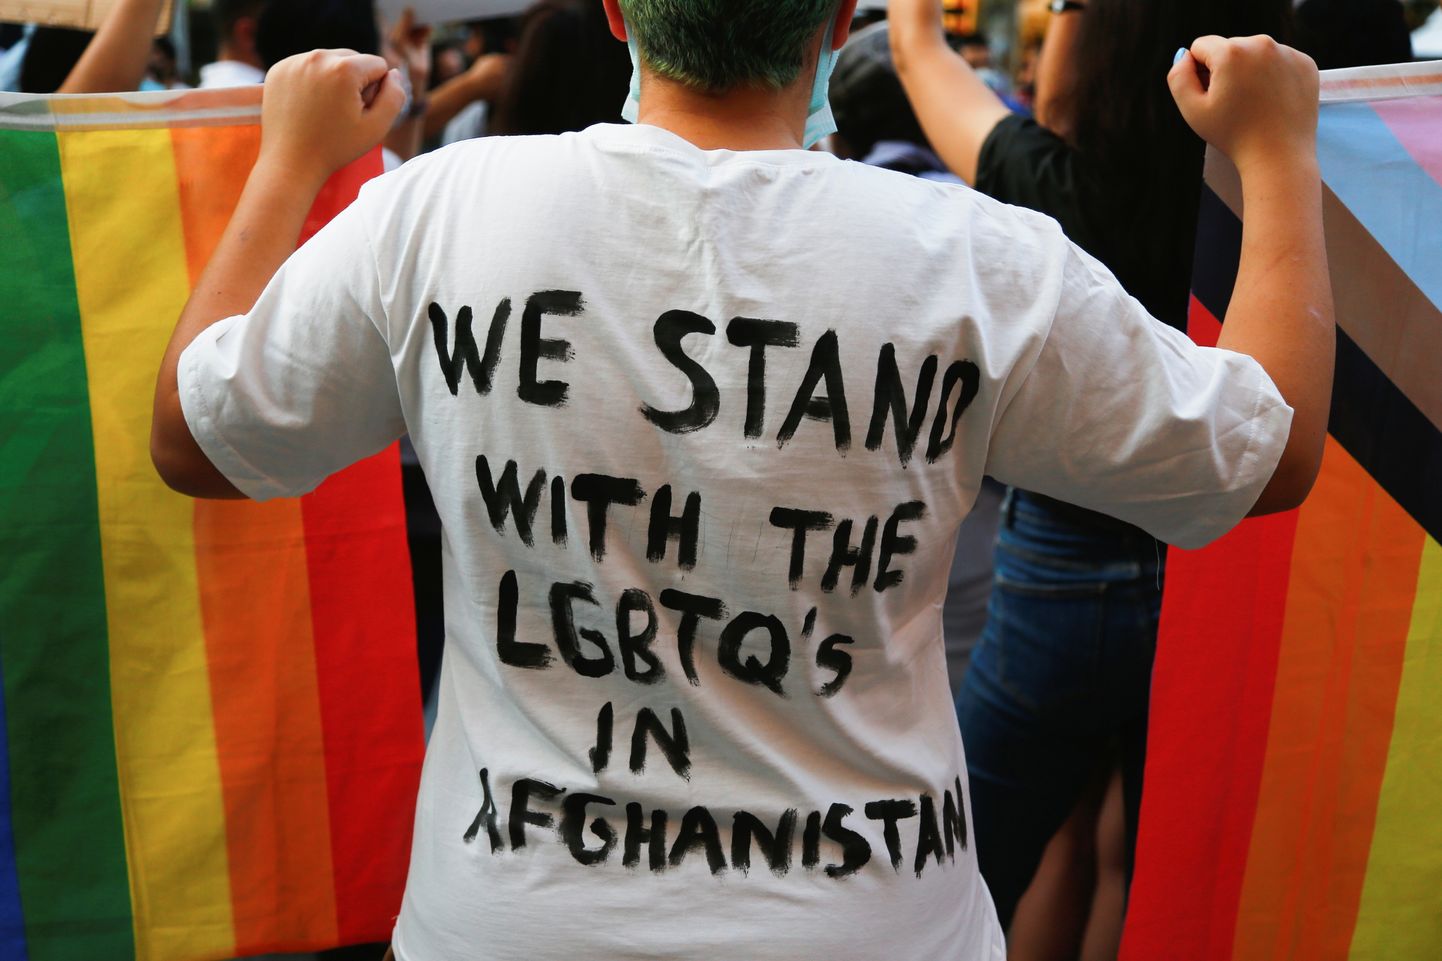 Türgi pealinnas toimus augusti lõpus Afganistani naiste, LGBTI ja LGBTQ kogukondade toeks meeleavaldus.